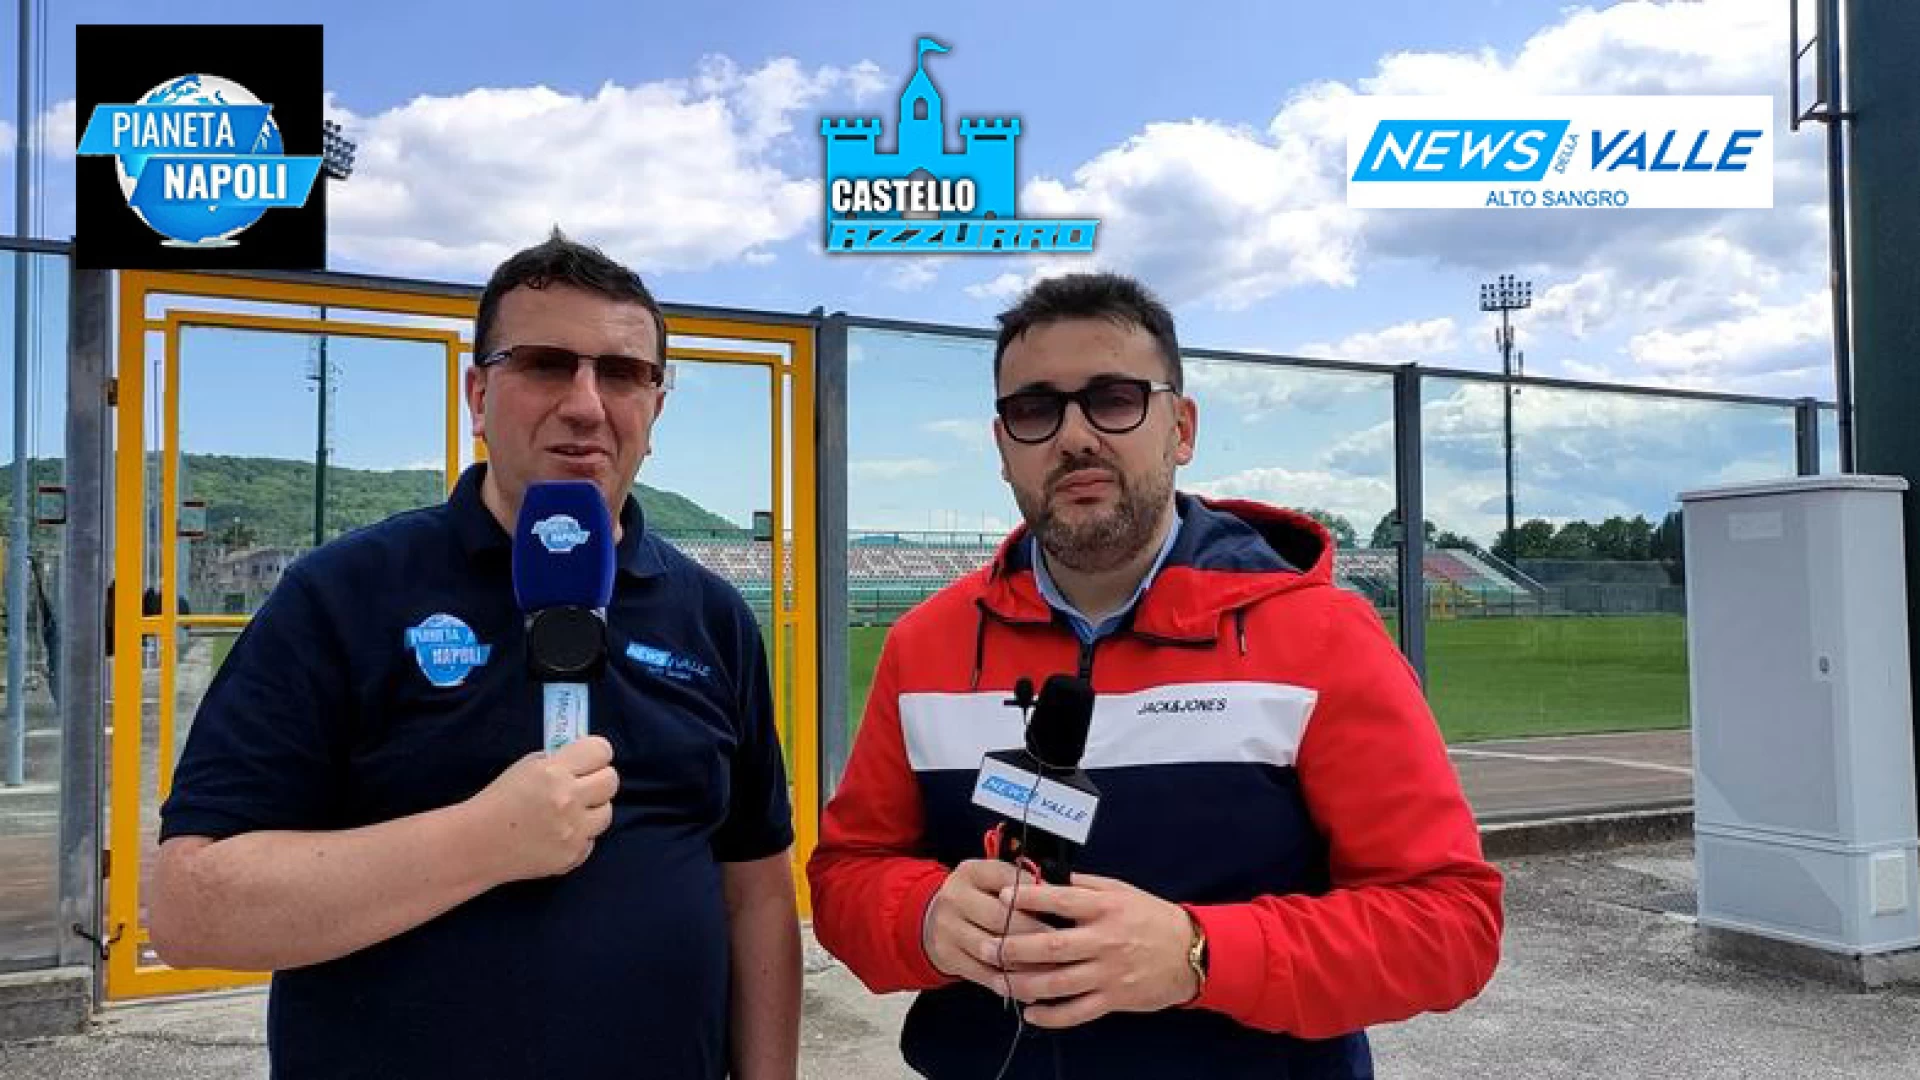 “Castello Azzurro 2023”, guarda il trailer di lancio della trasmissione curata da Newsdellavalle.com e Pianetanapoli.it.